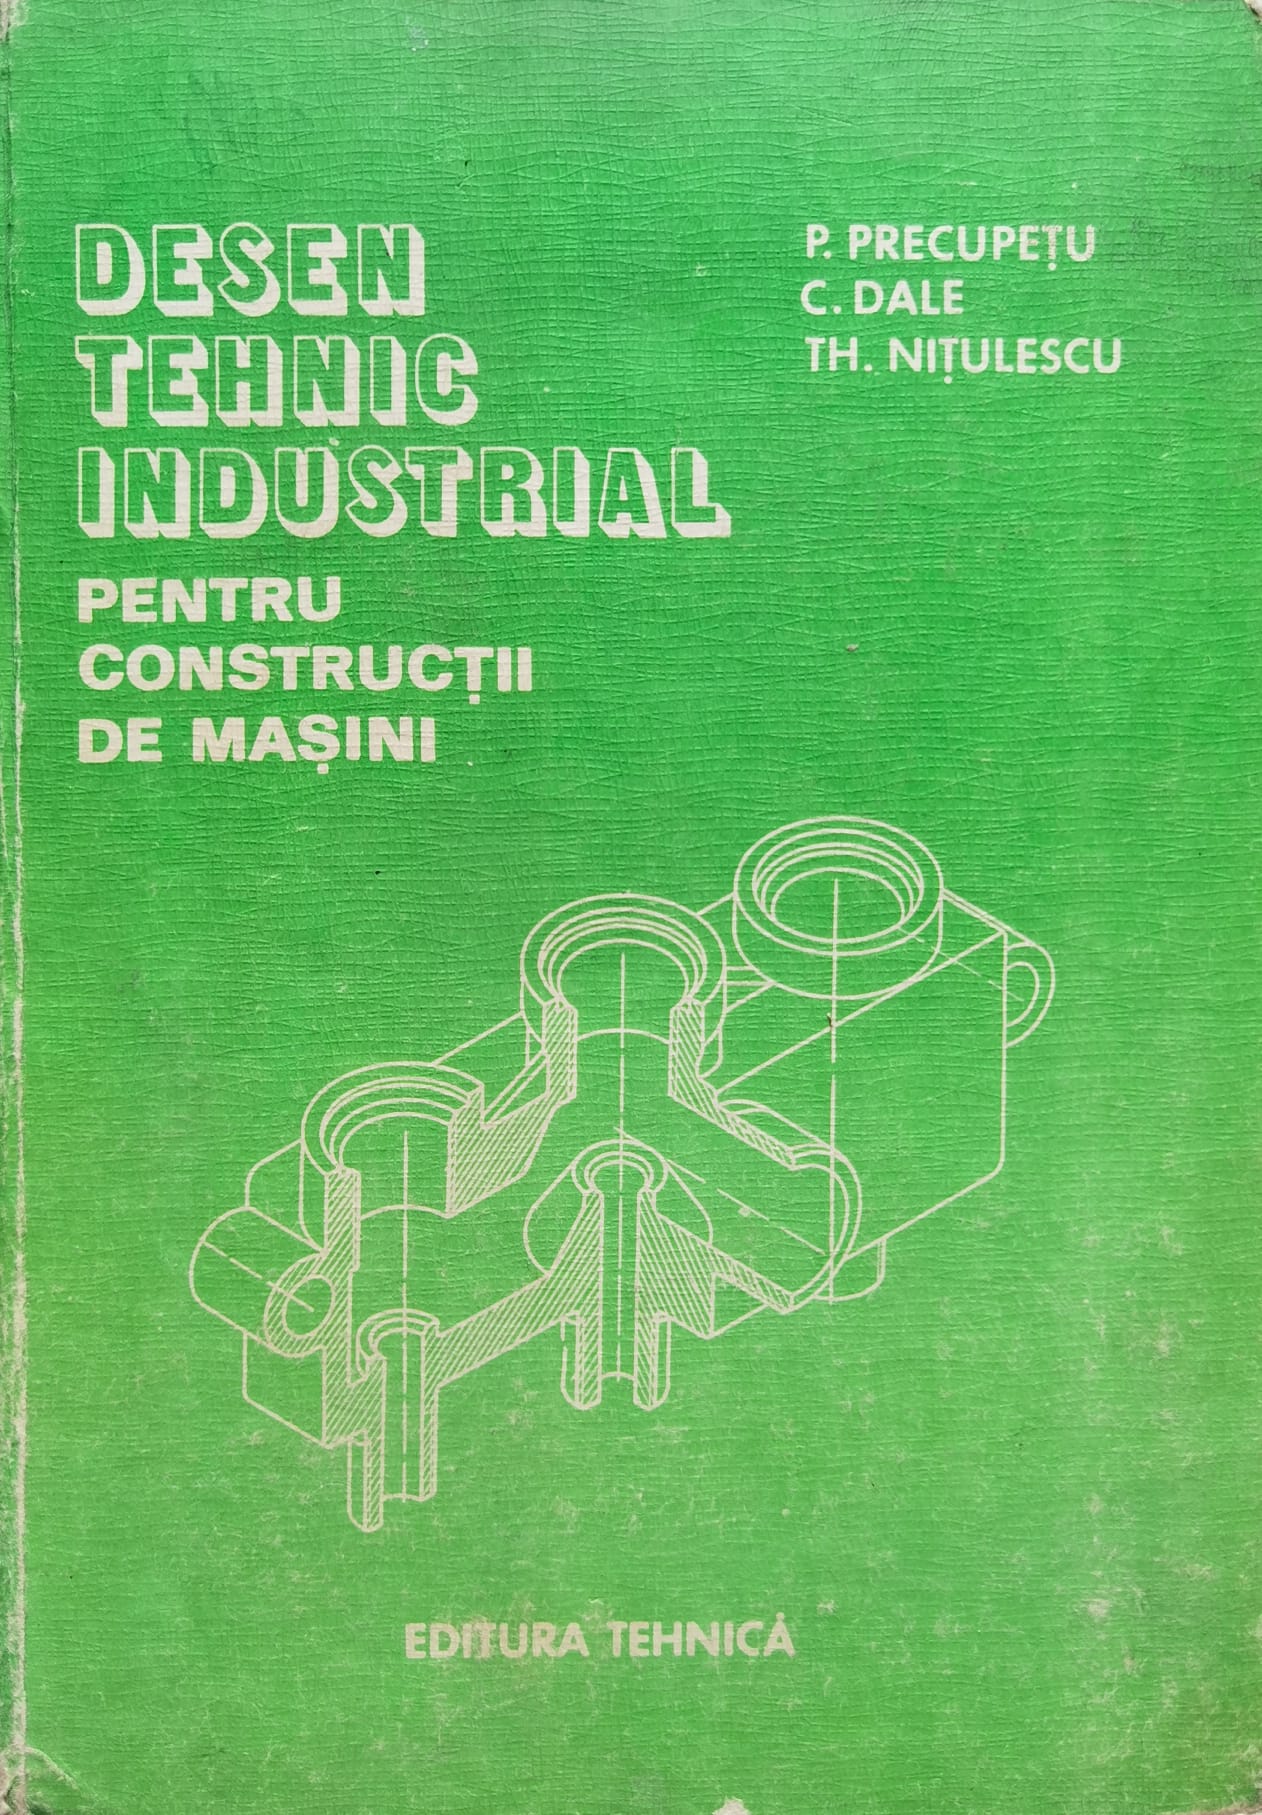 desen tehnic industrial pentru constructia de masini                                                 p. precupetu c. dale t. nitulescu                                                                   